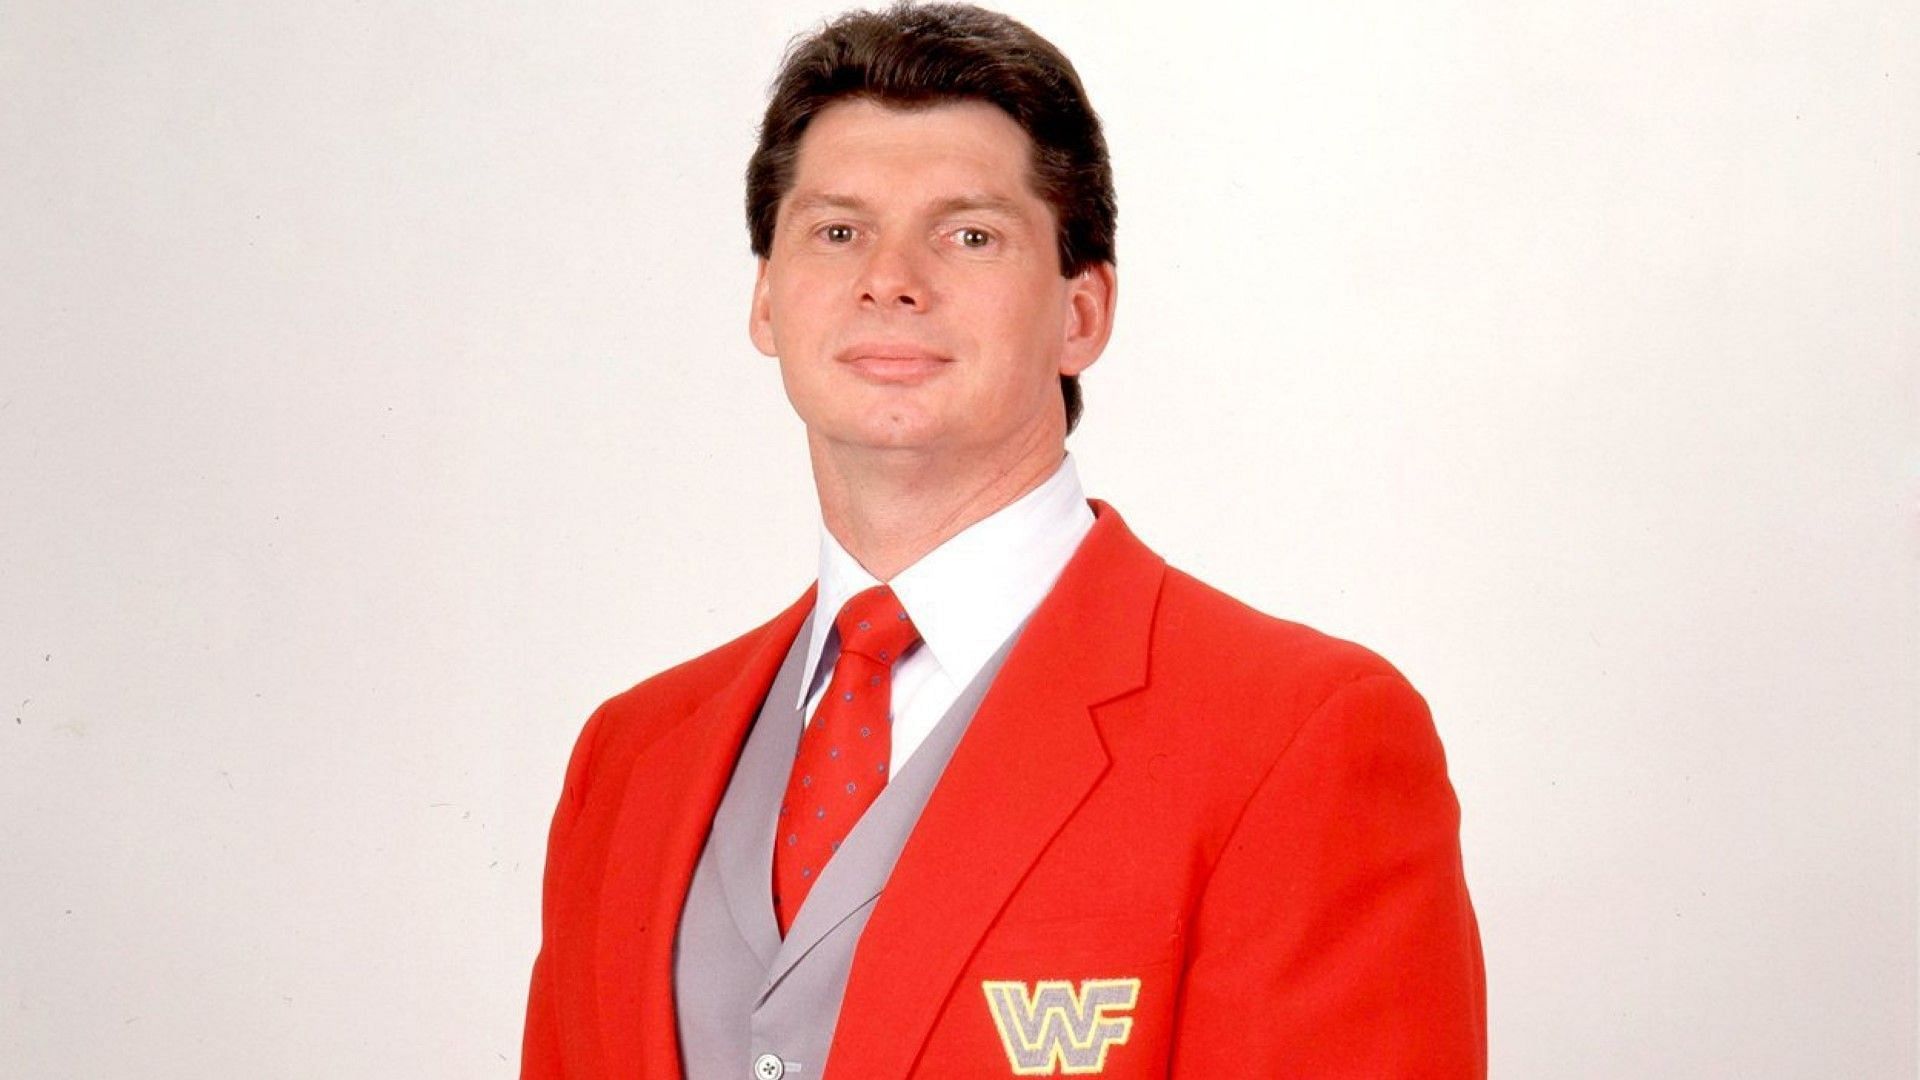 A young Vince McMahon poses at WWE photo shoot